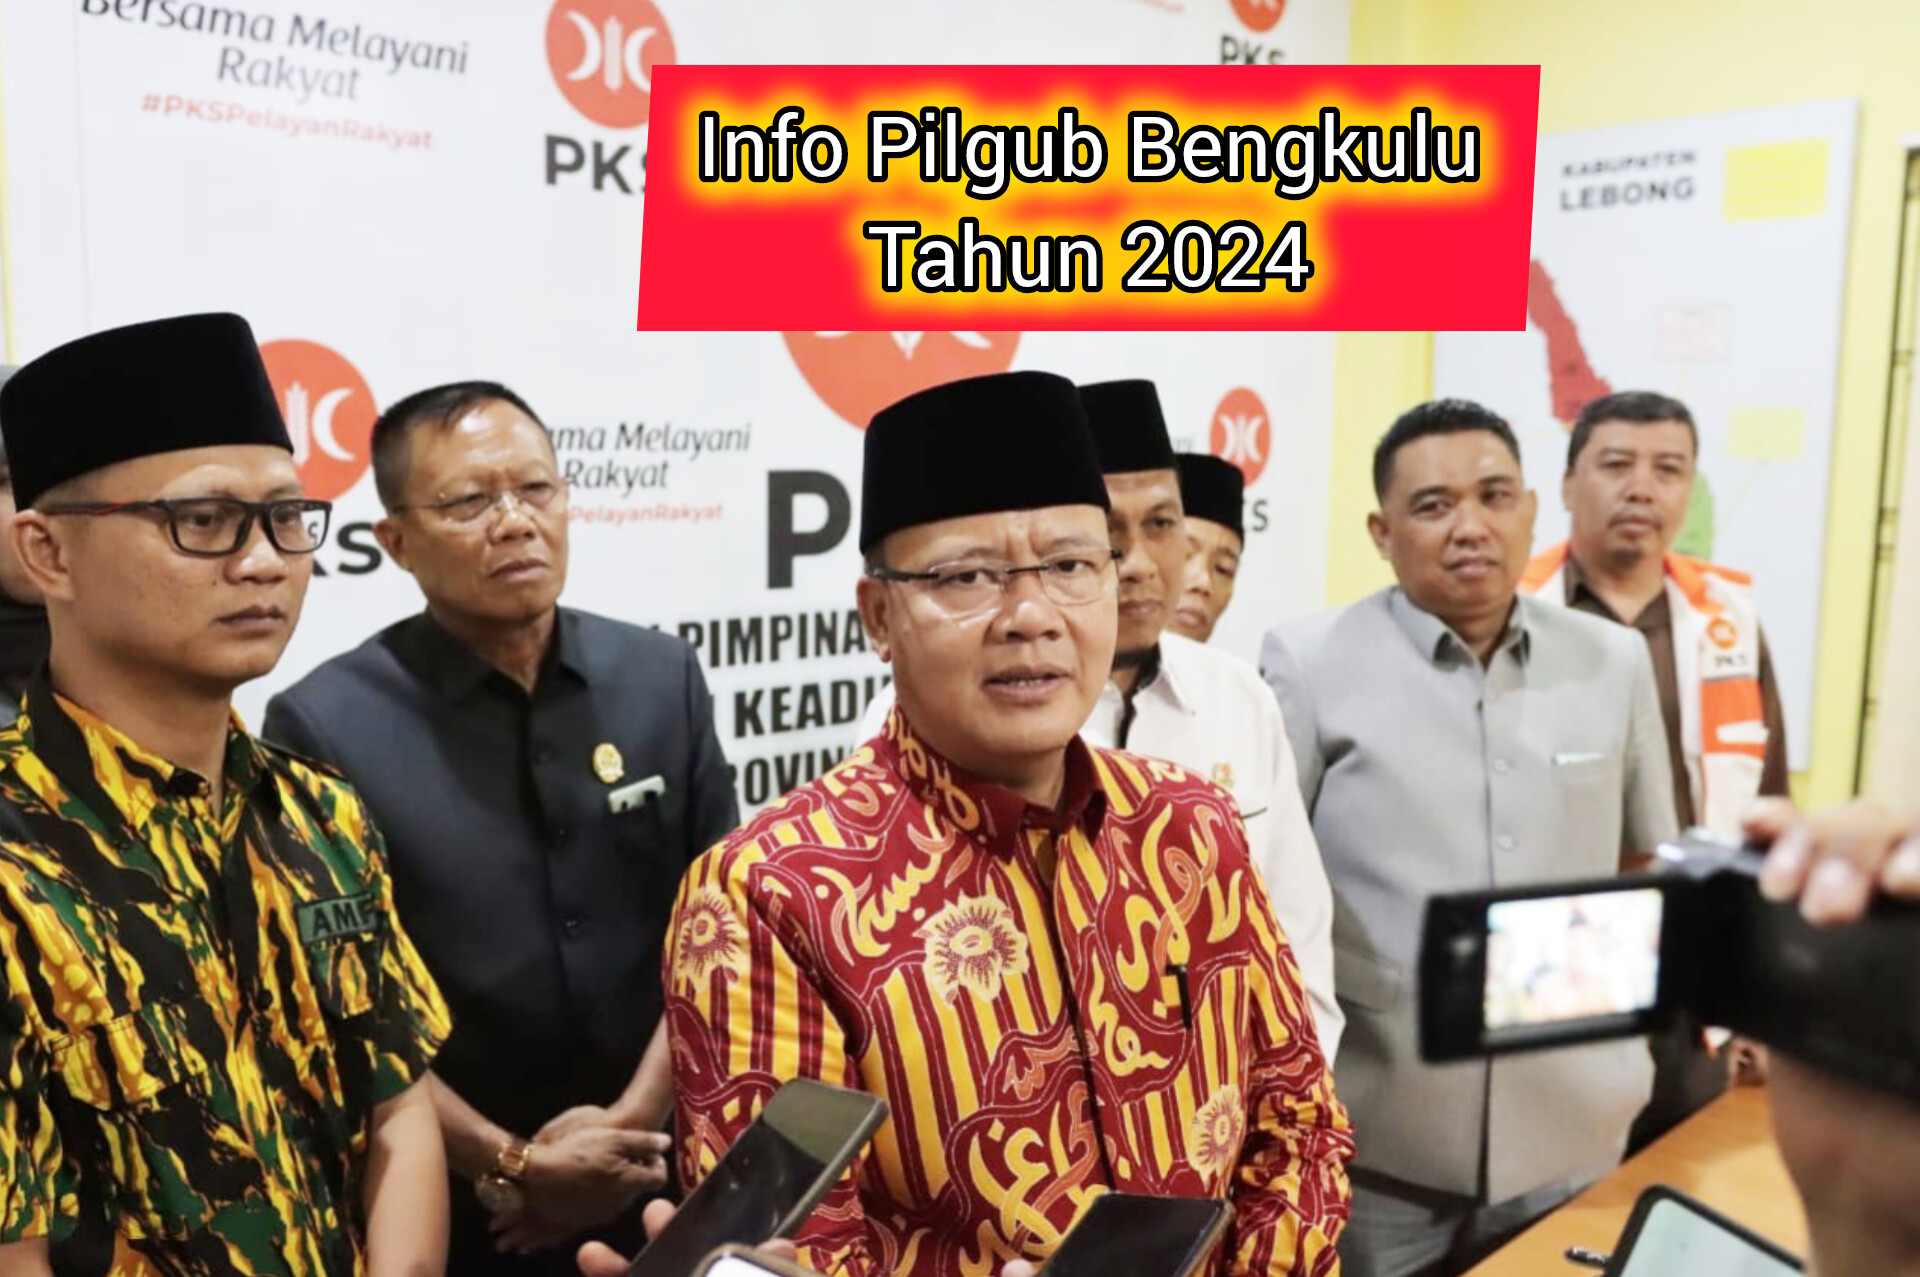 Rohidin Mersyah Buka Peluang Koalisi Bersama Banyak Partai untuk Pilgub Bengkulu 2024